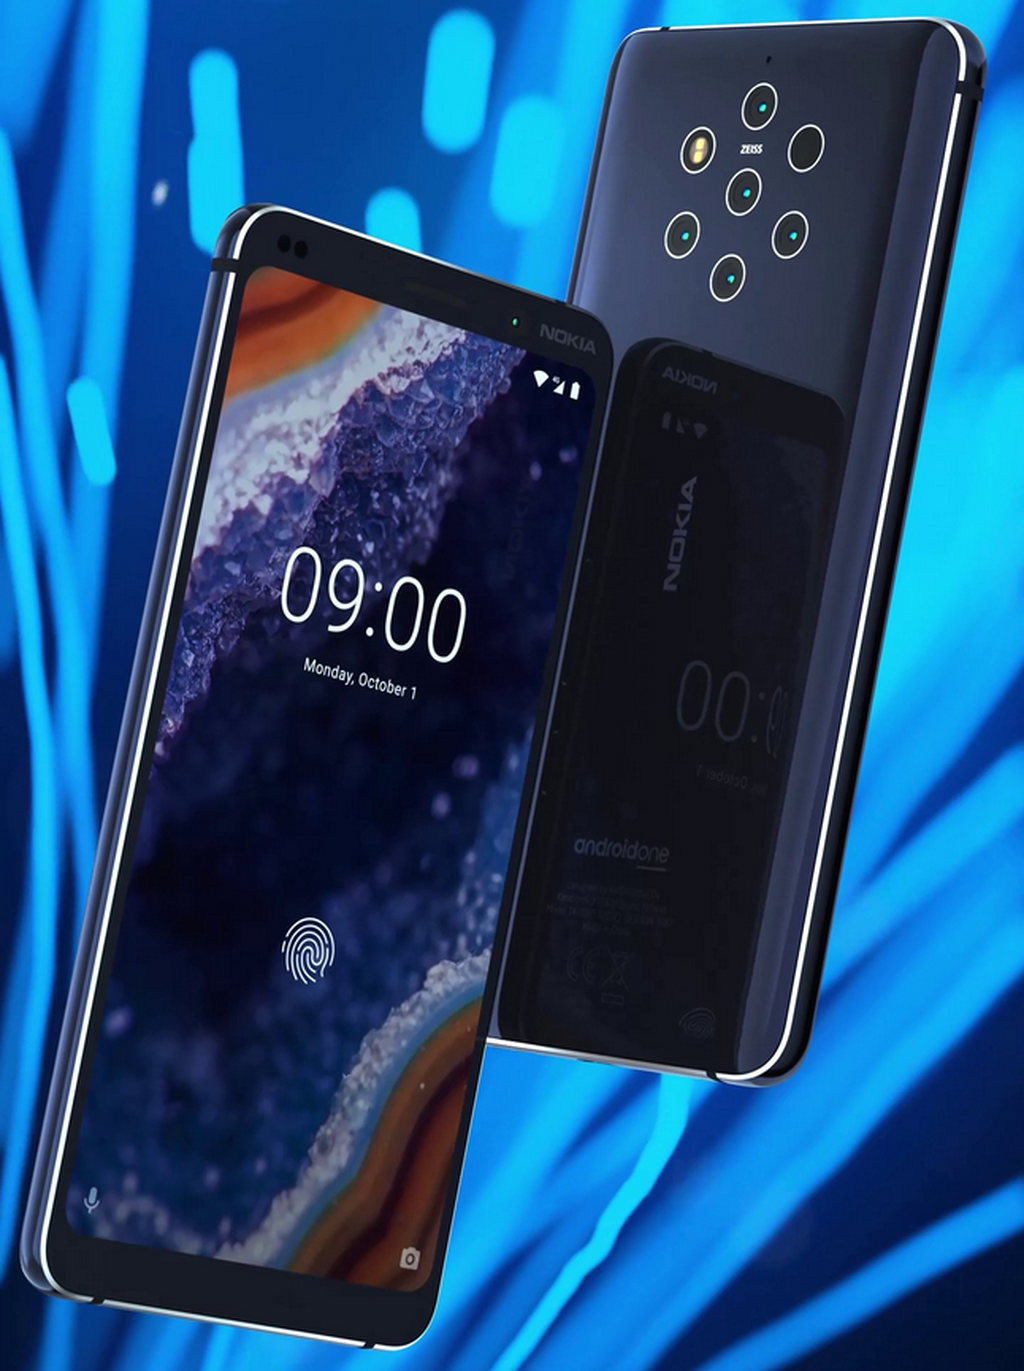 Nokia 9 hứa hẹn ra mắt trước thềm MWC 2019, rò rỉ hiệu ứng mở khóa vân tay màn hình ảnh 1